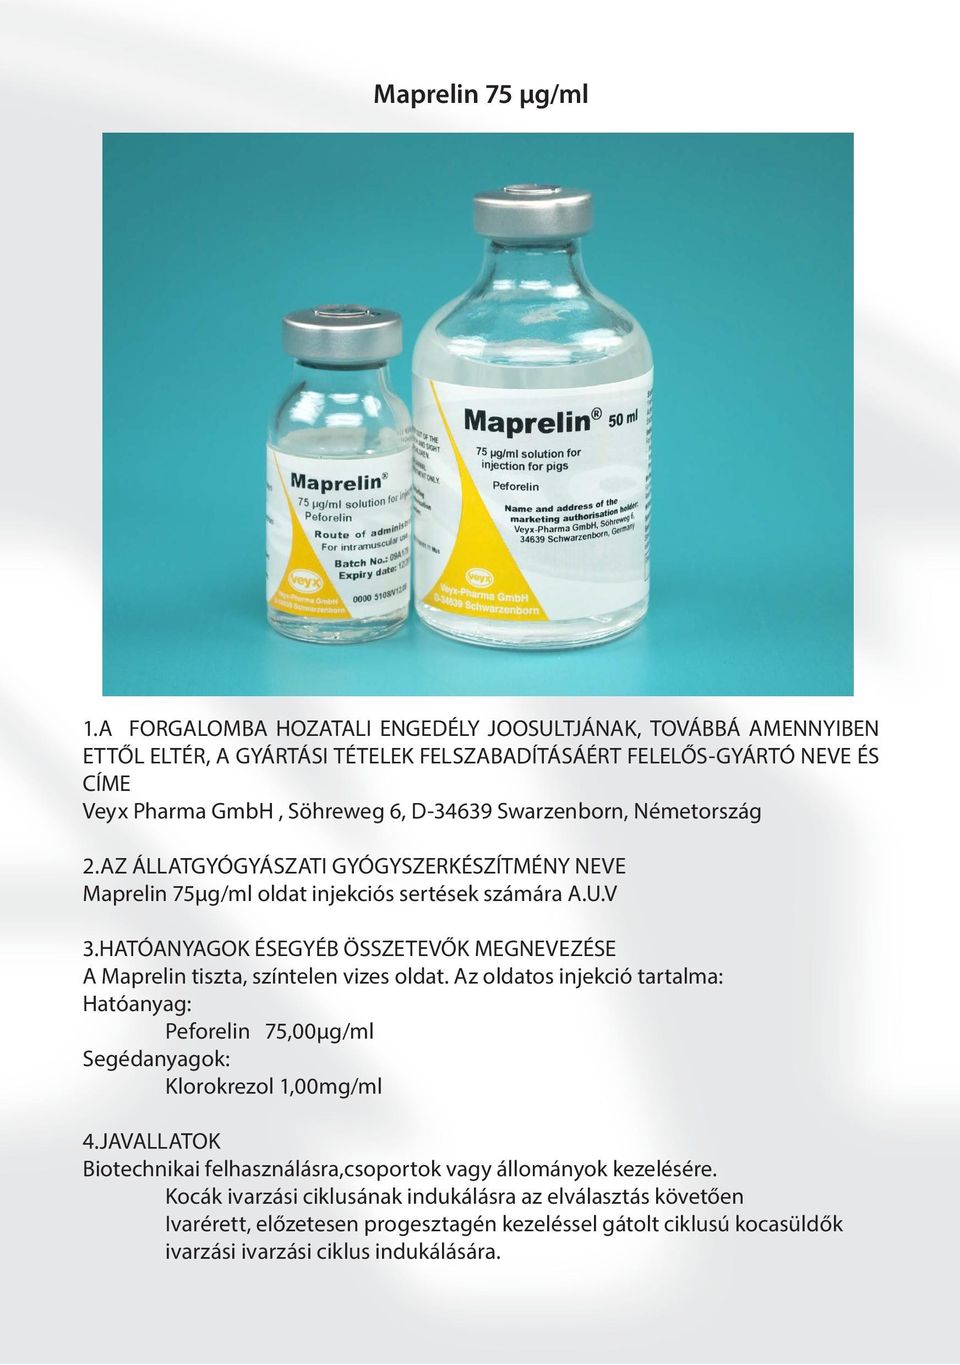 Swarzenborn, Németország 2.AZ ÁLLATGYÓGYÁSZATI GYÓGYSZERKÉSZÍTMÉNY NEVE Maprelin 75µg/ml oldat injekciós sertések számára A.U.V 3.